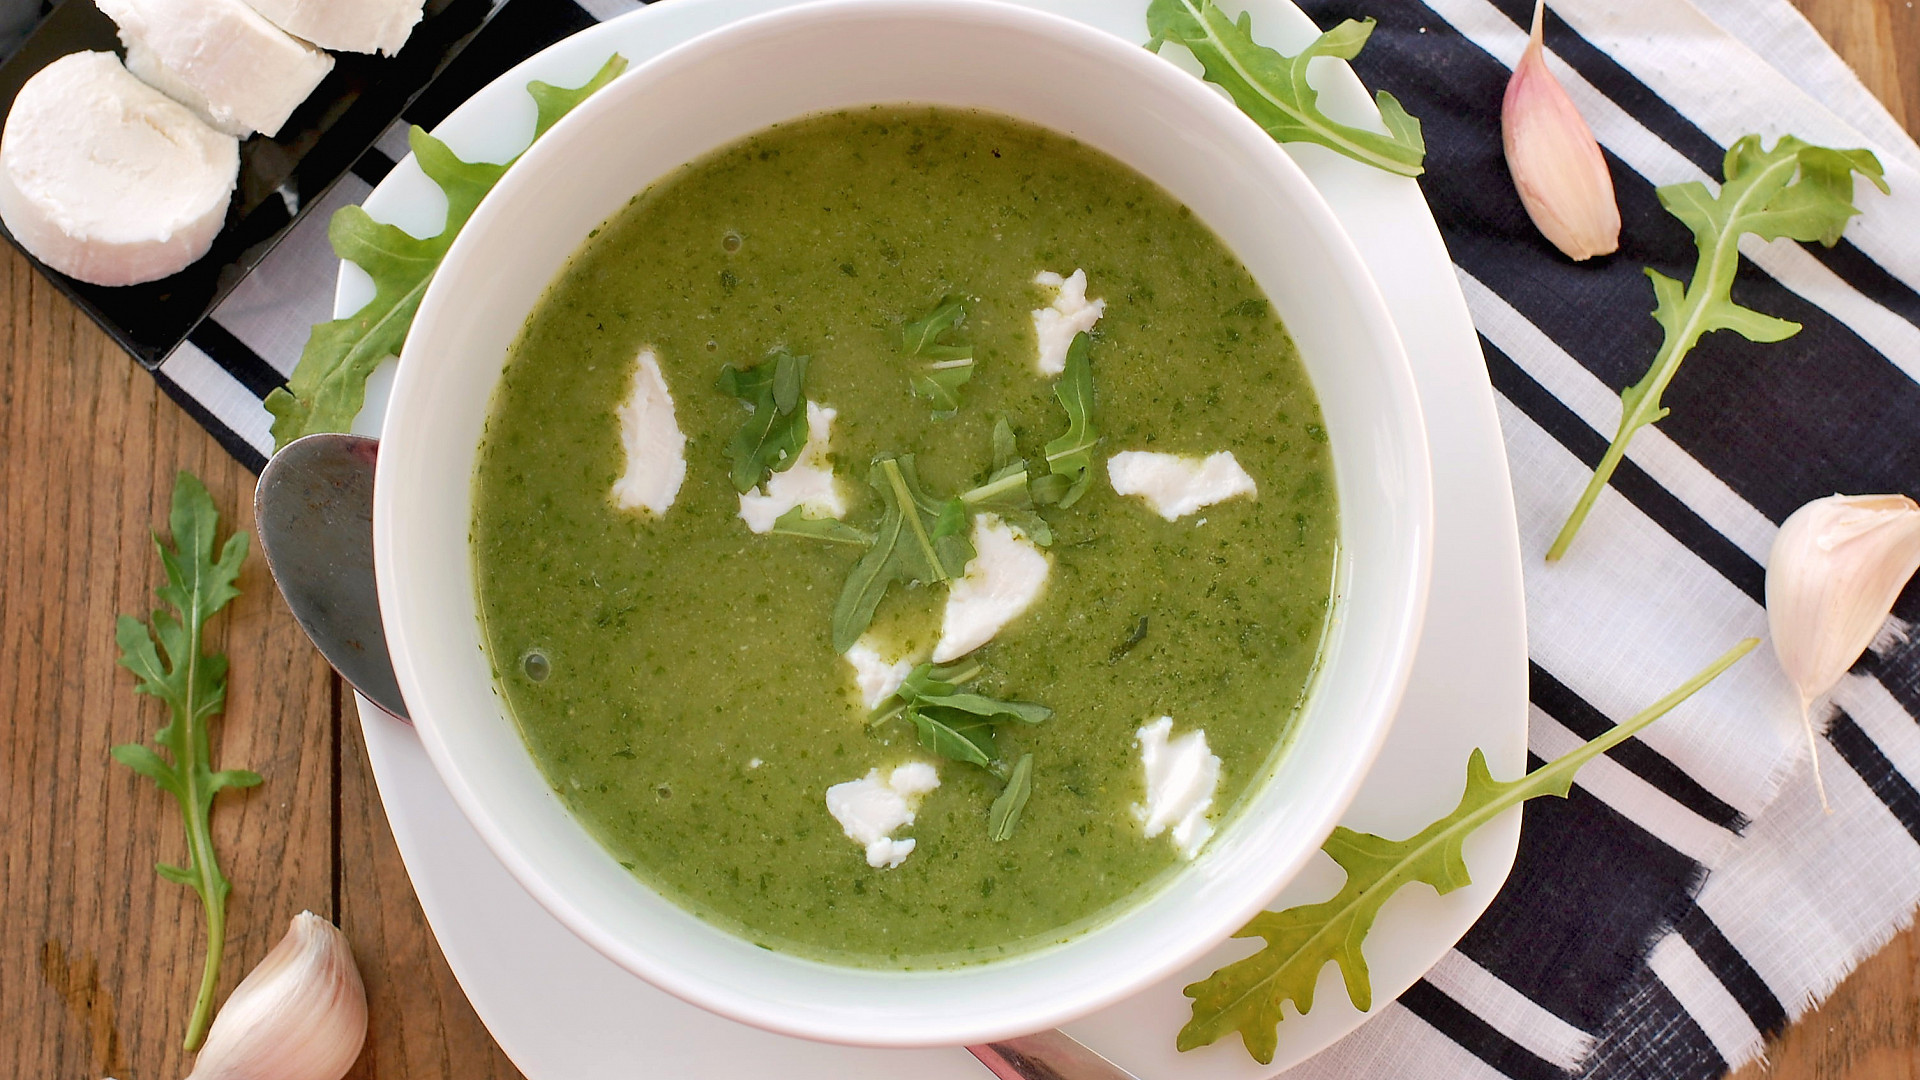 kterou jarní polévku máte nejraději? bylinkovou, špenátovou, chřestovou nebo jinou?